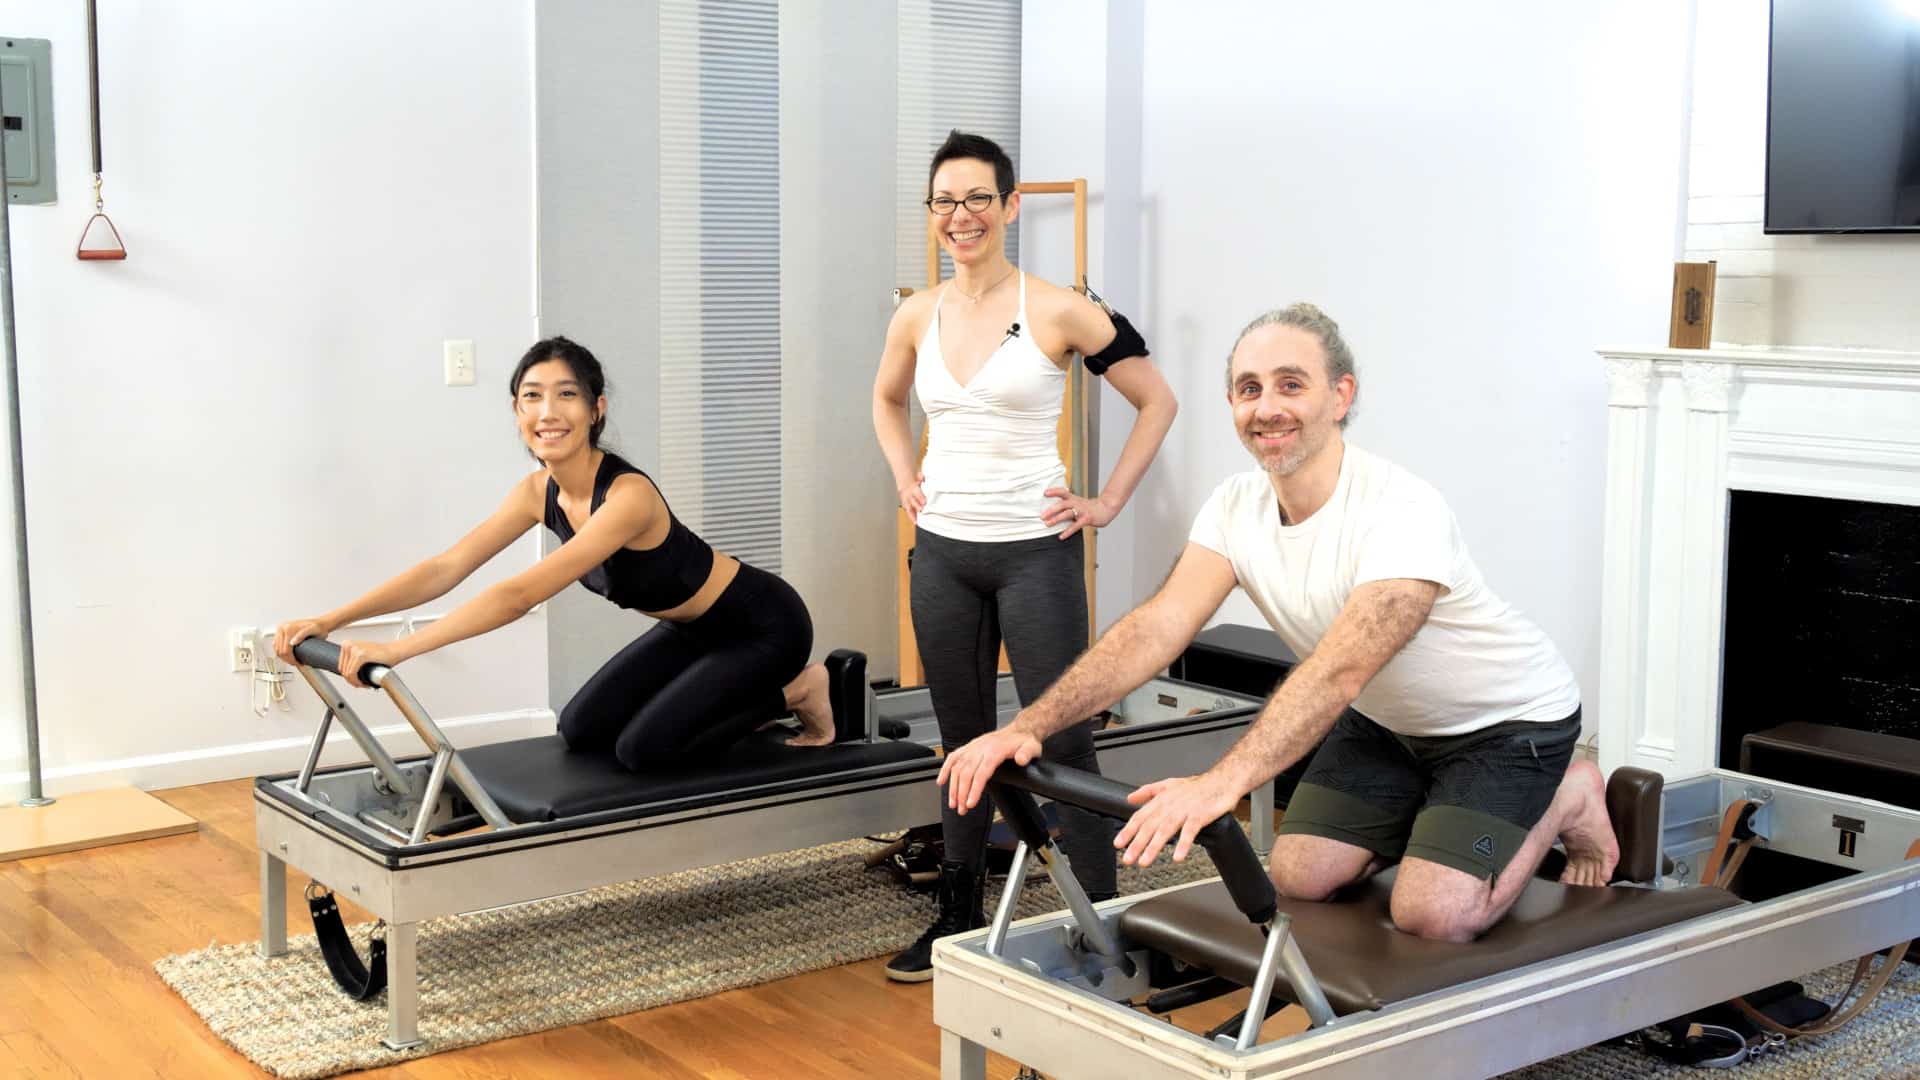 Pilates Reformer workout with Shari Berkowitz